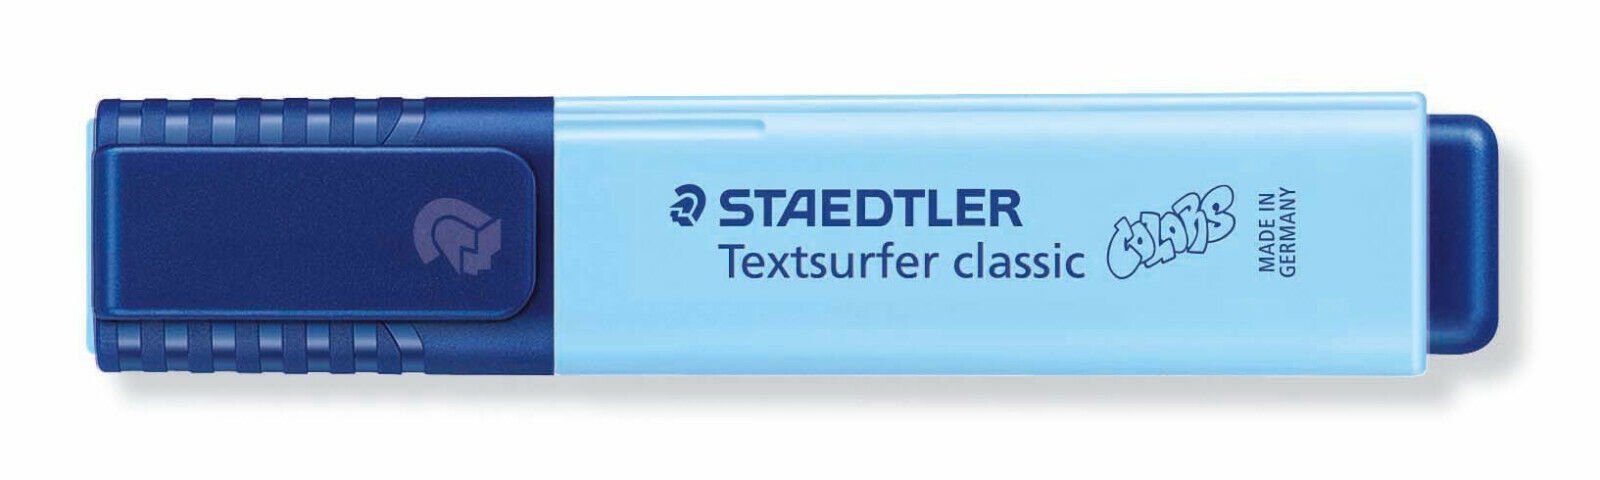 STAEDTLER Marker Staedtler Textsurfer classic colors himmelblau 364 C-305 Leuchtstift, INK JET SAFE